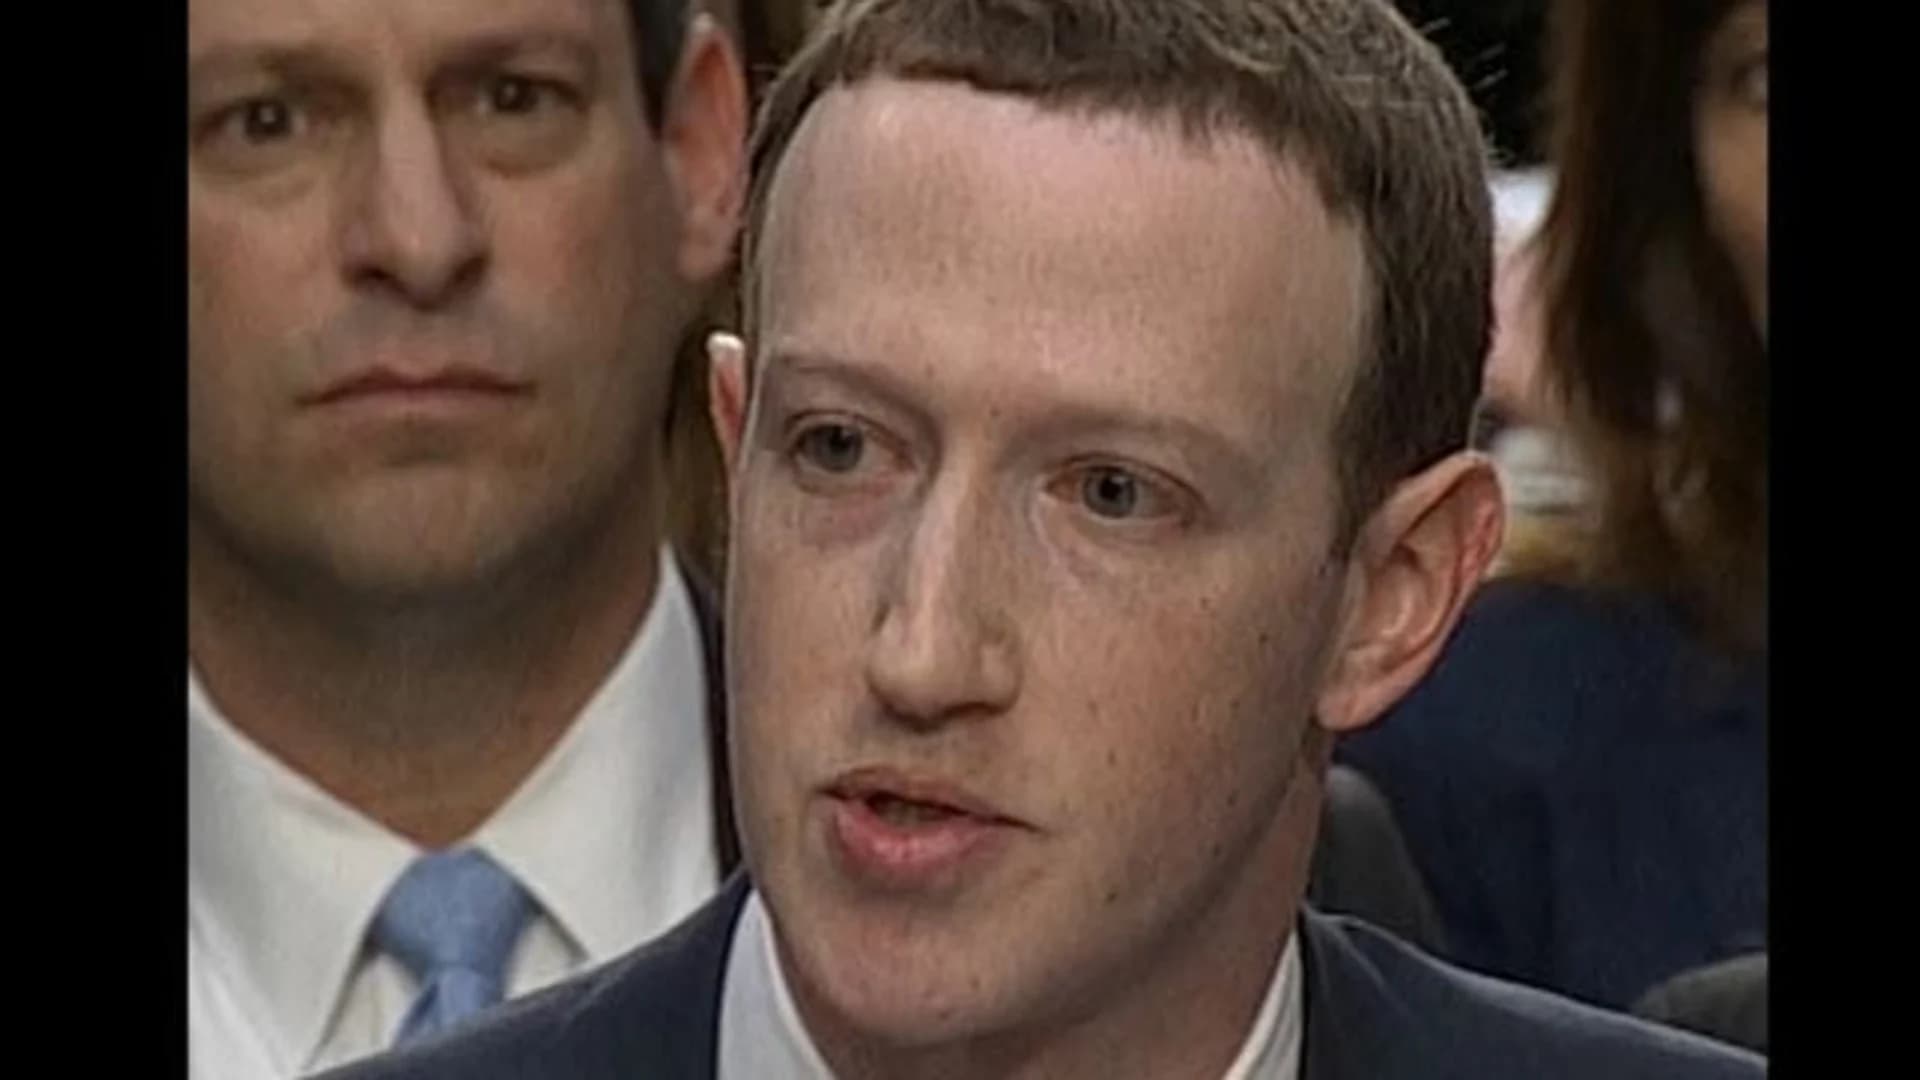 The Grid: Congress unfriends Zuckerberg